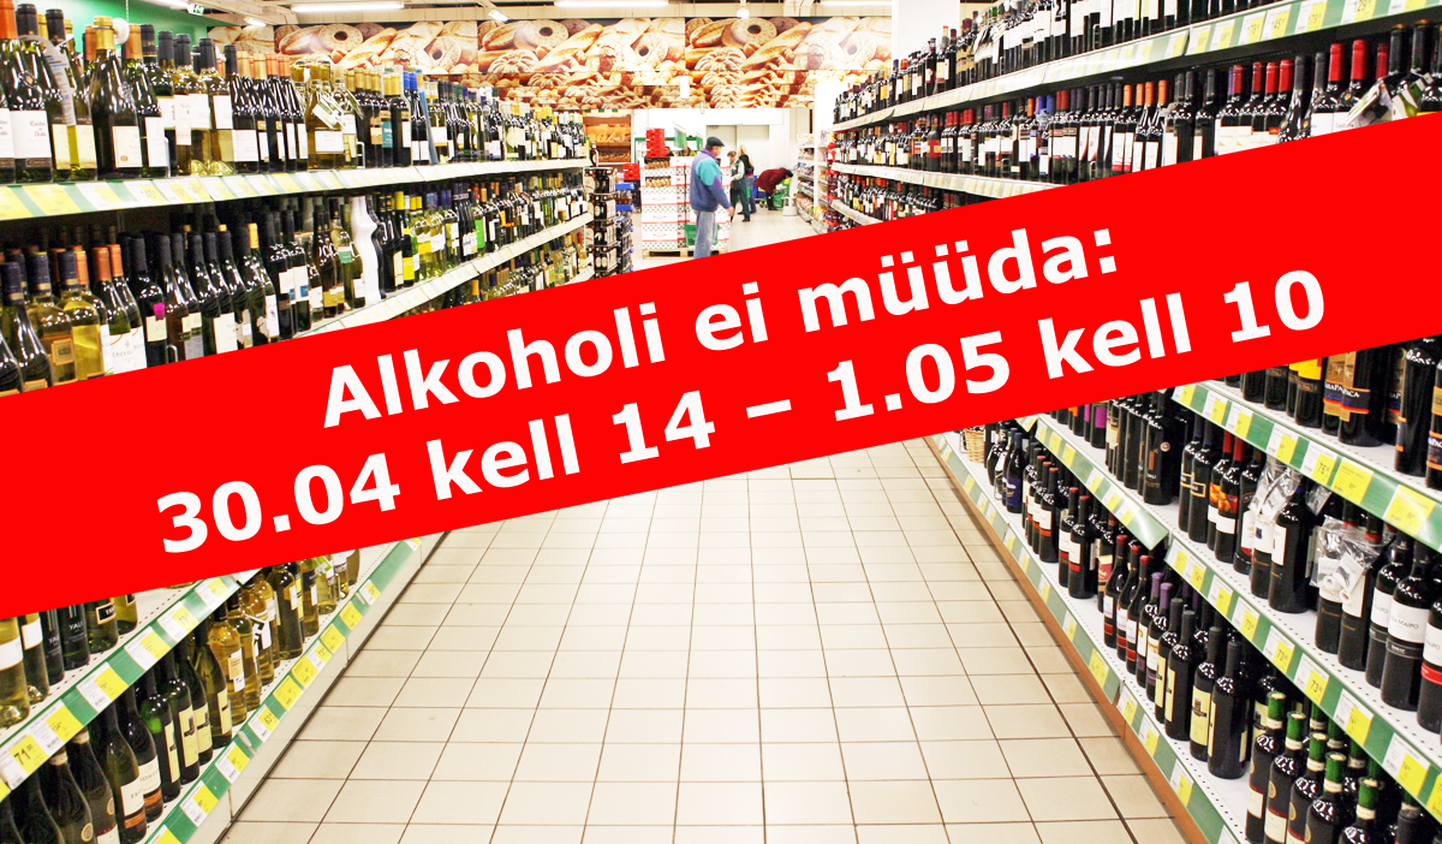 alkoholi ei müüda: 30.04 kell 14 - 1.05 kell 10